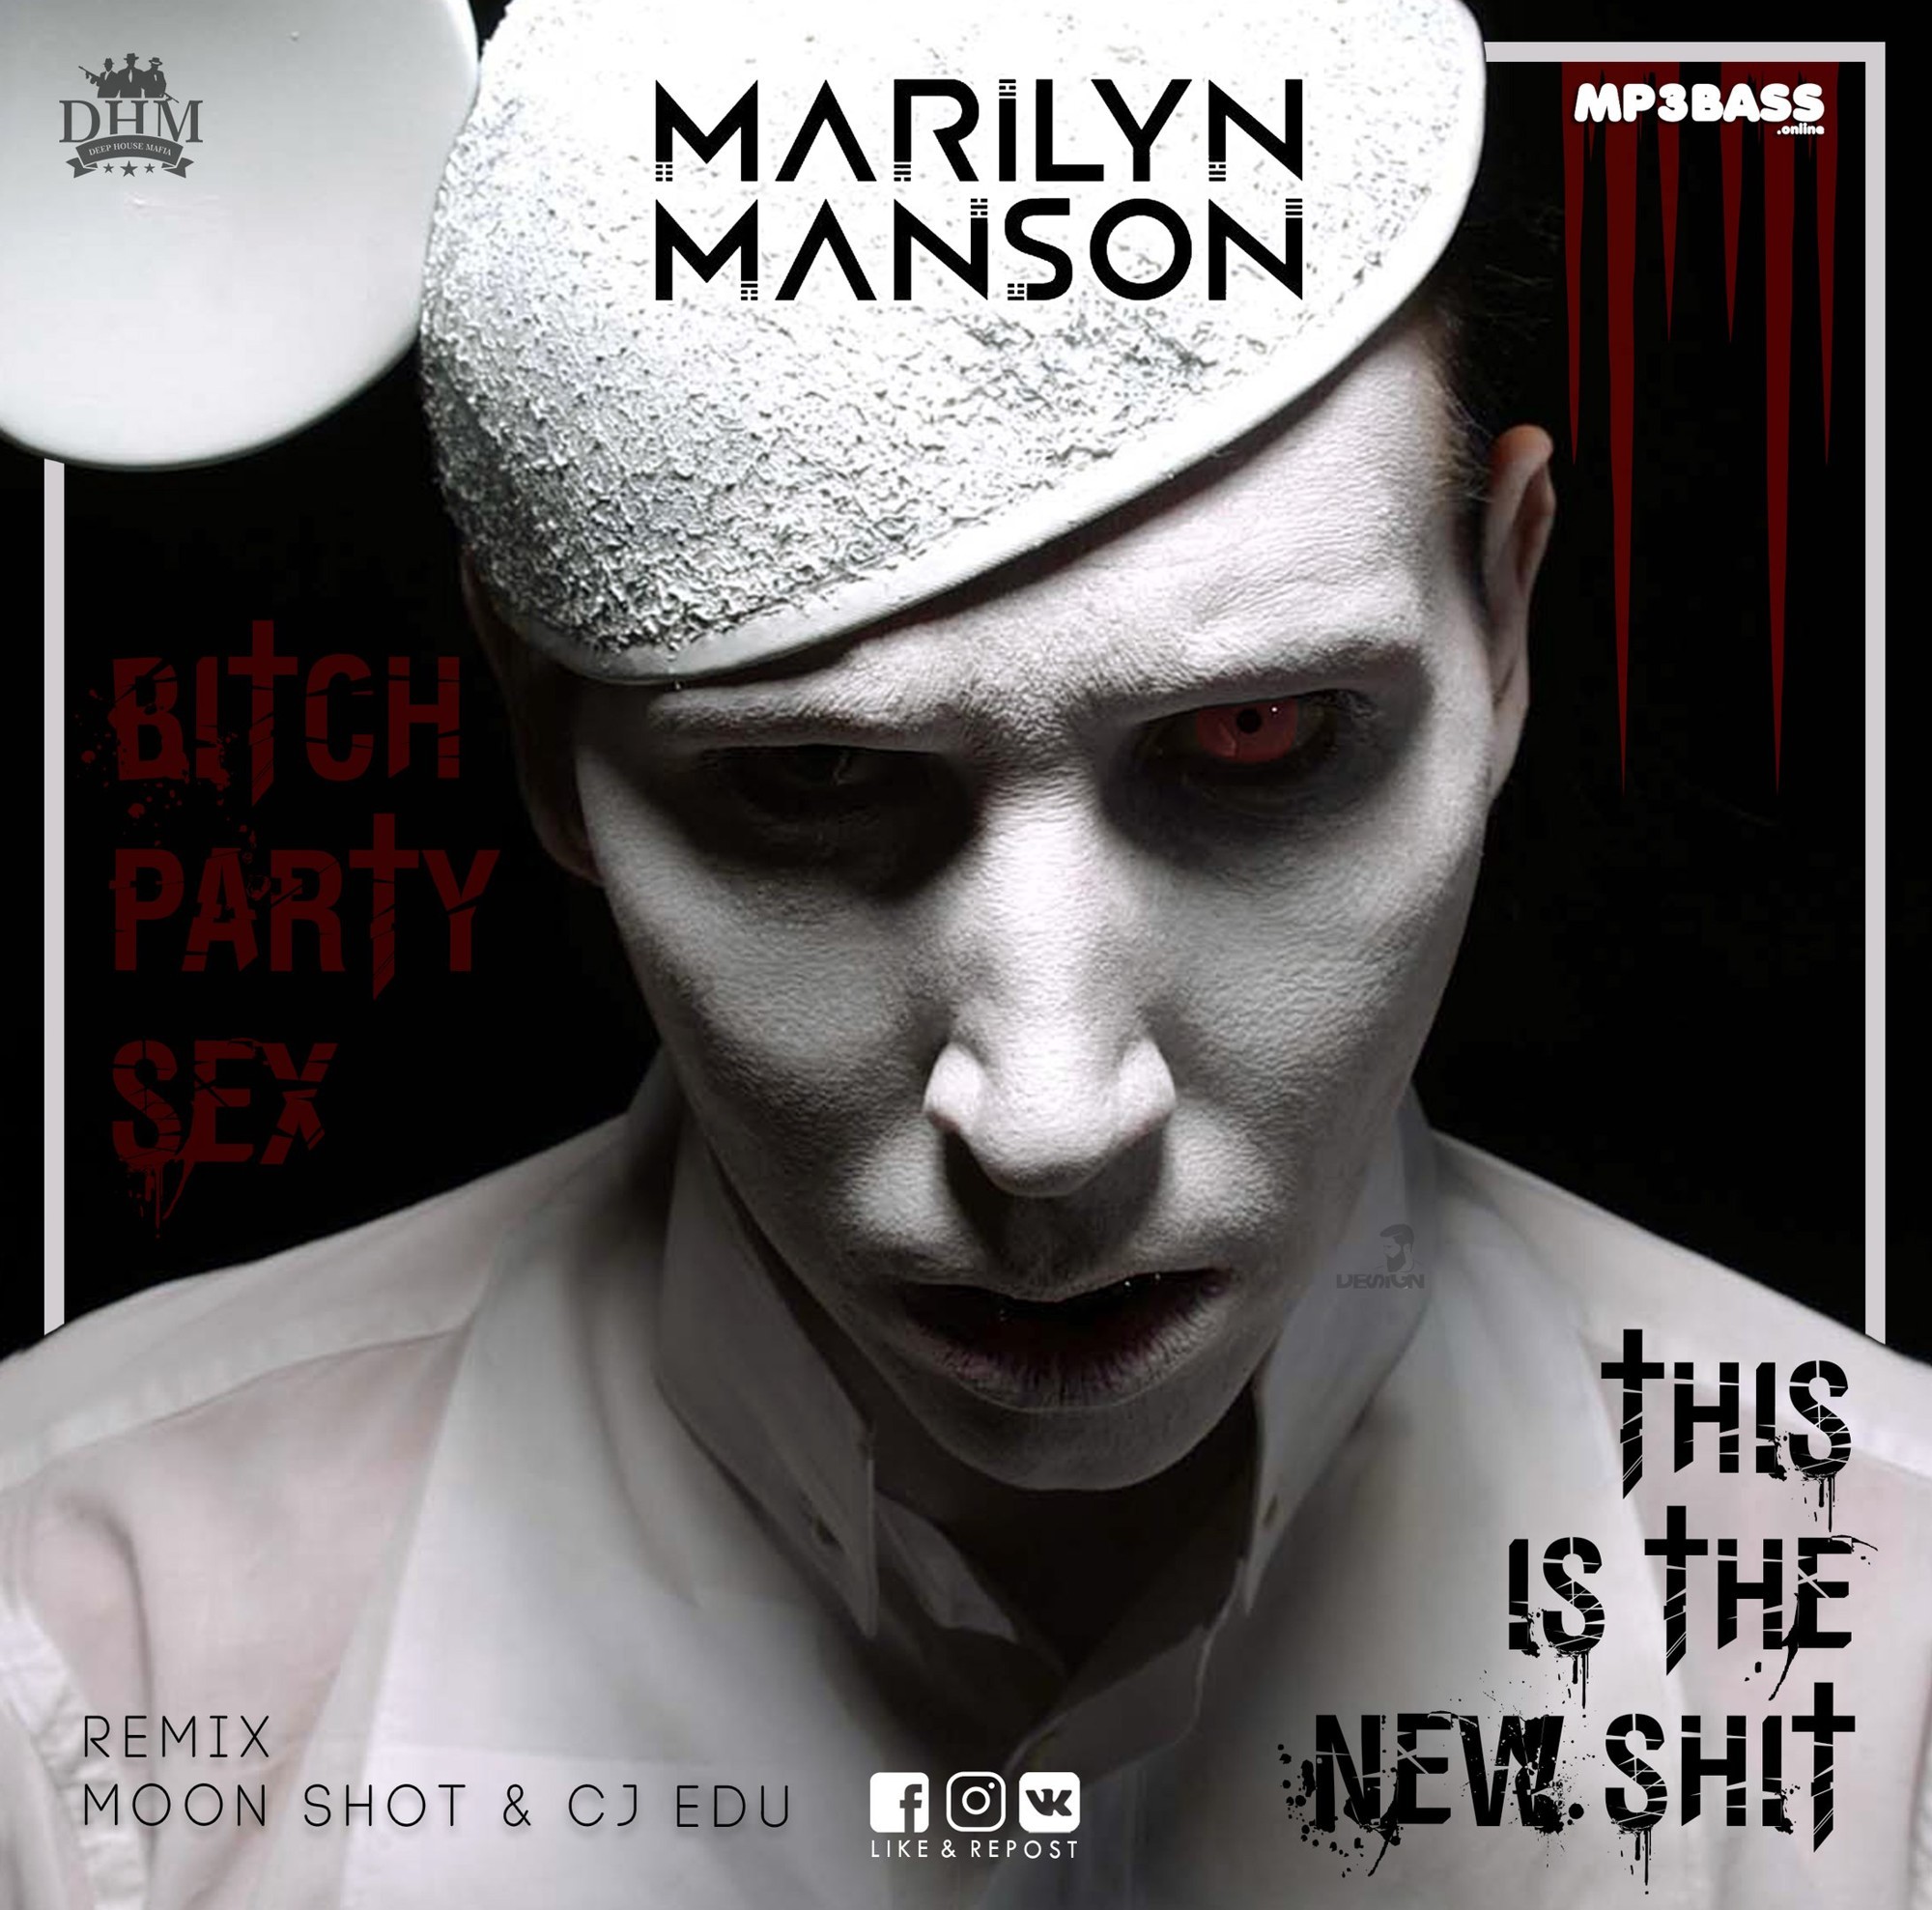 Marilyn manson new shitt